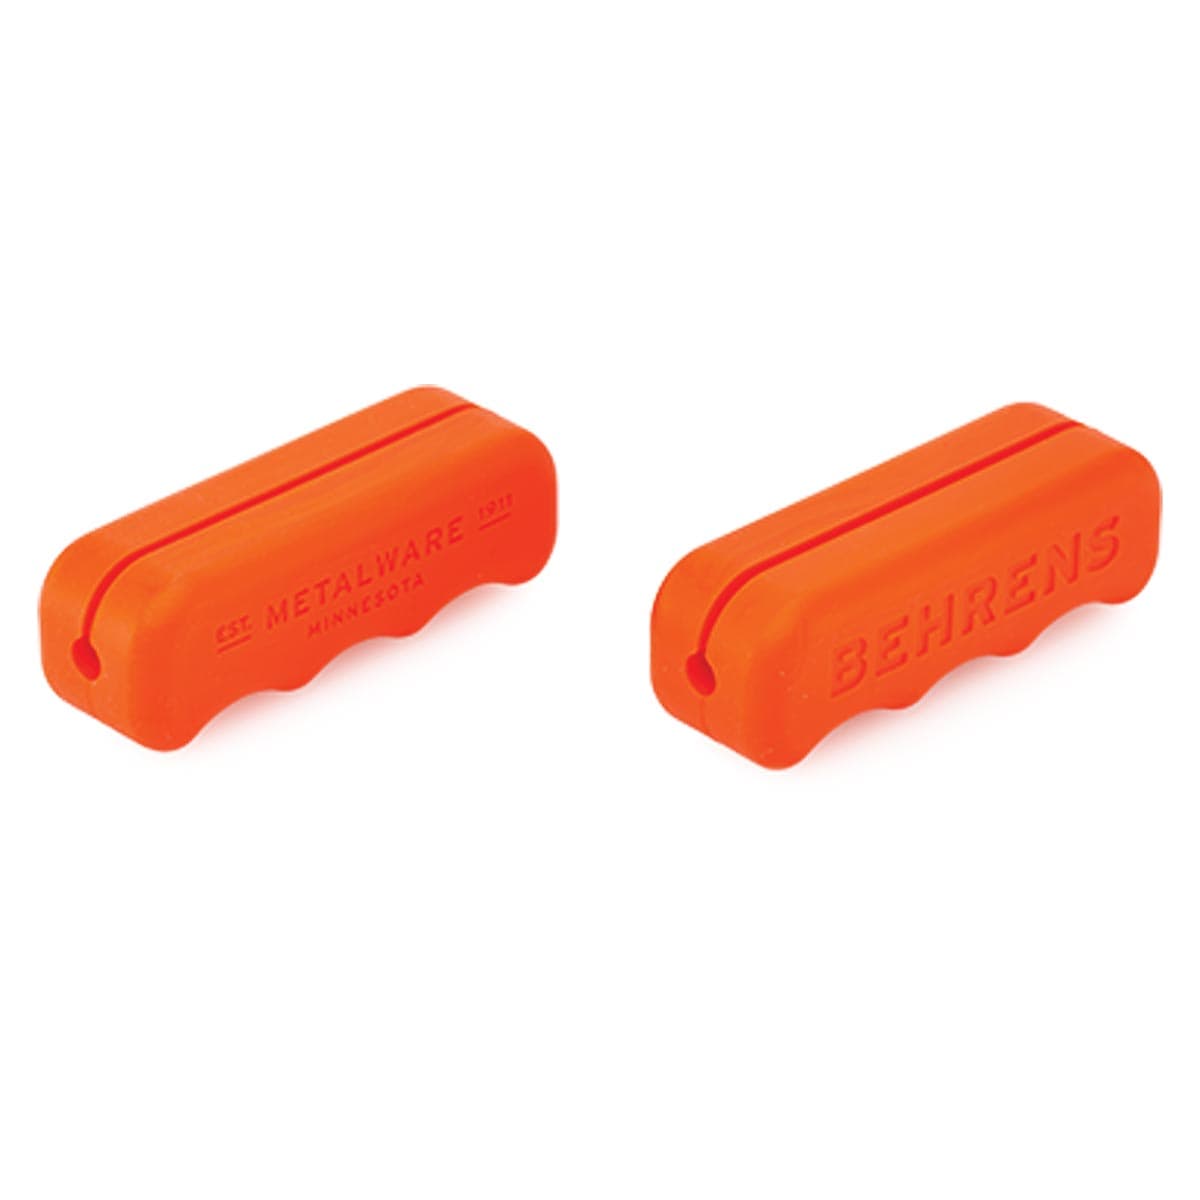 Behrens Comfort Grip Handles - 3", Orange